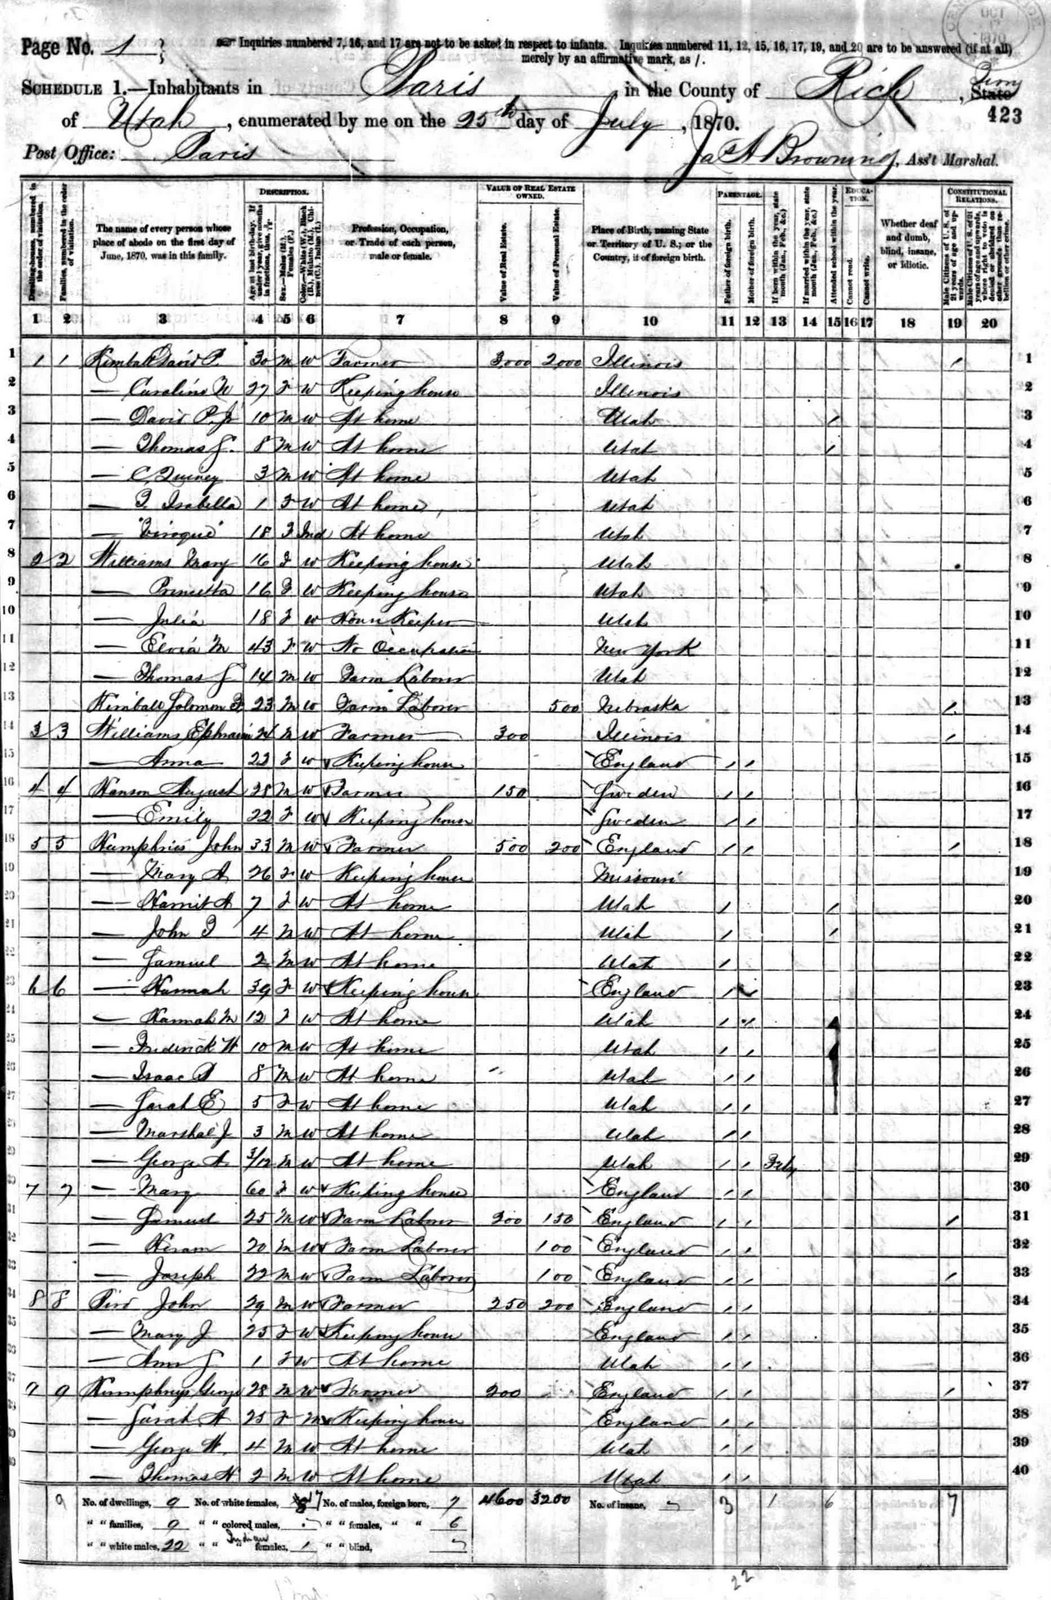 [Isaac+Brough+Law+-+1870+Census+-+Utah+Territory+-+Rich+county+-+Paris.jpg]